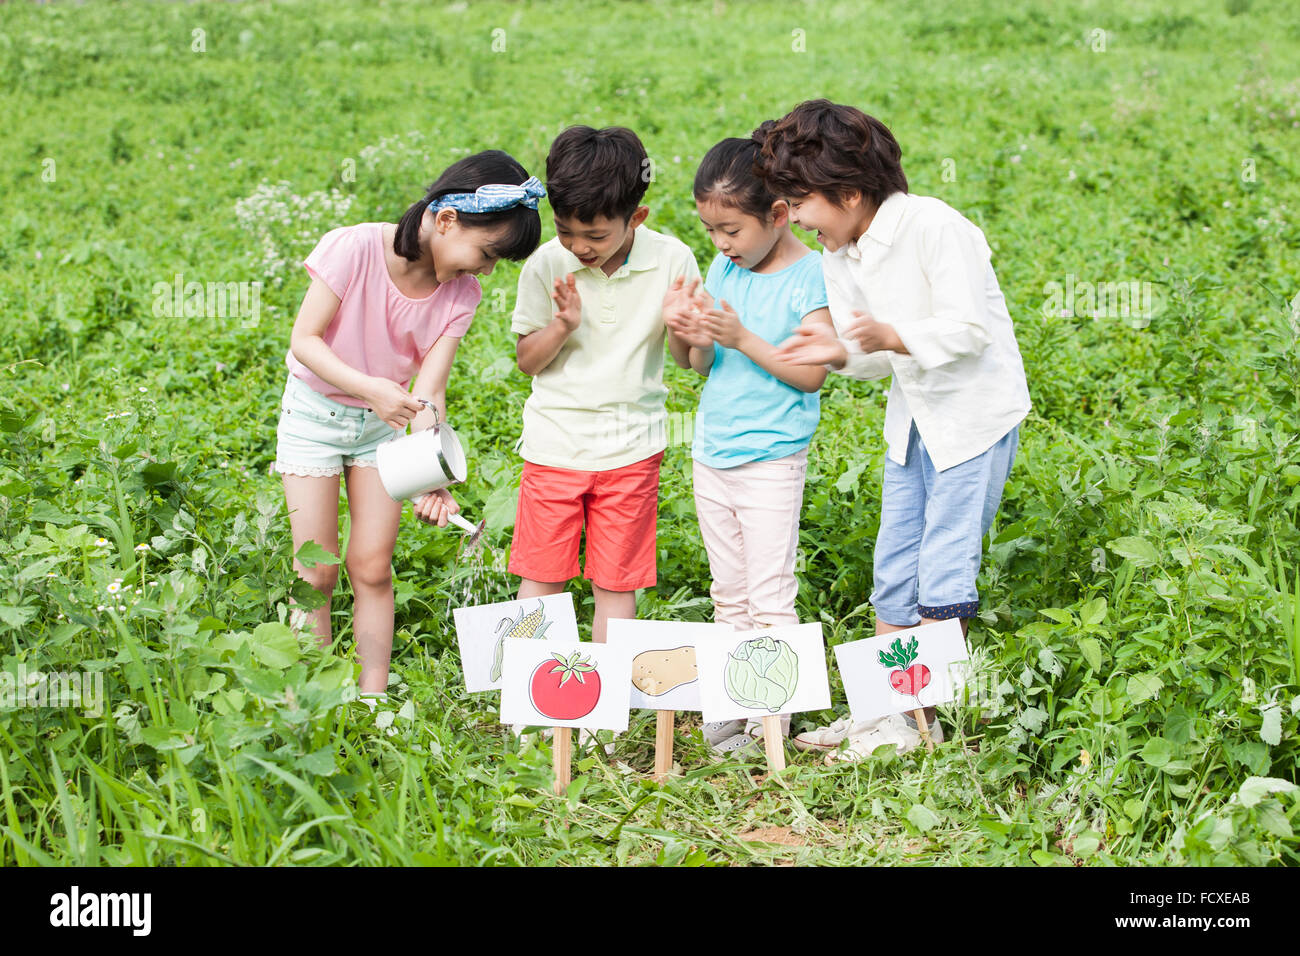 Quattro bambini insieme guardando verso il basso e di impianti di irrigazione in campo vegetale con segni sul campo Foto Stock